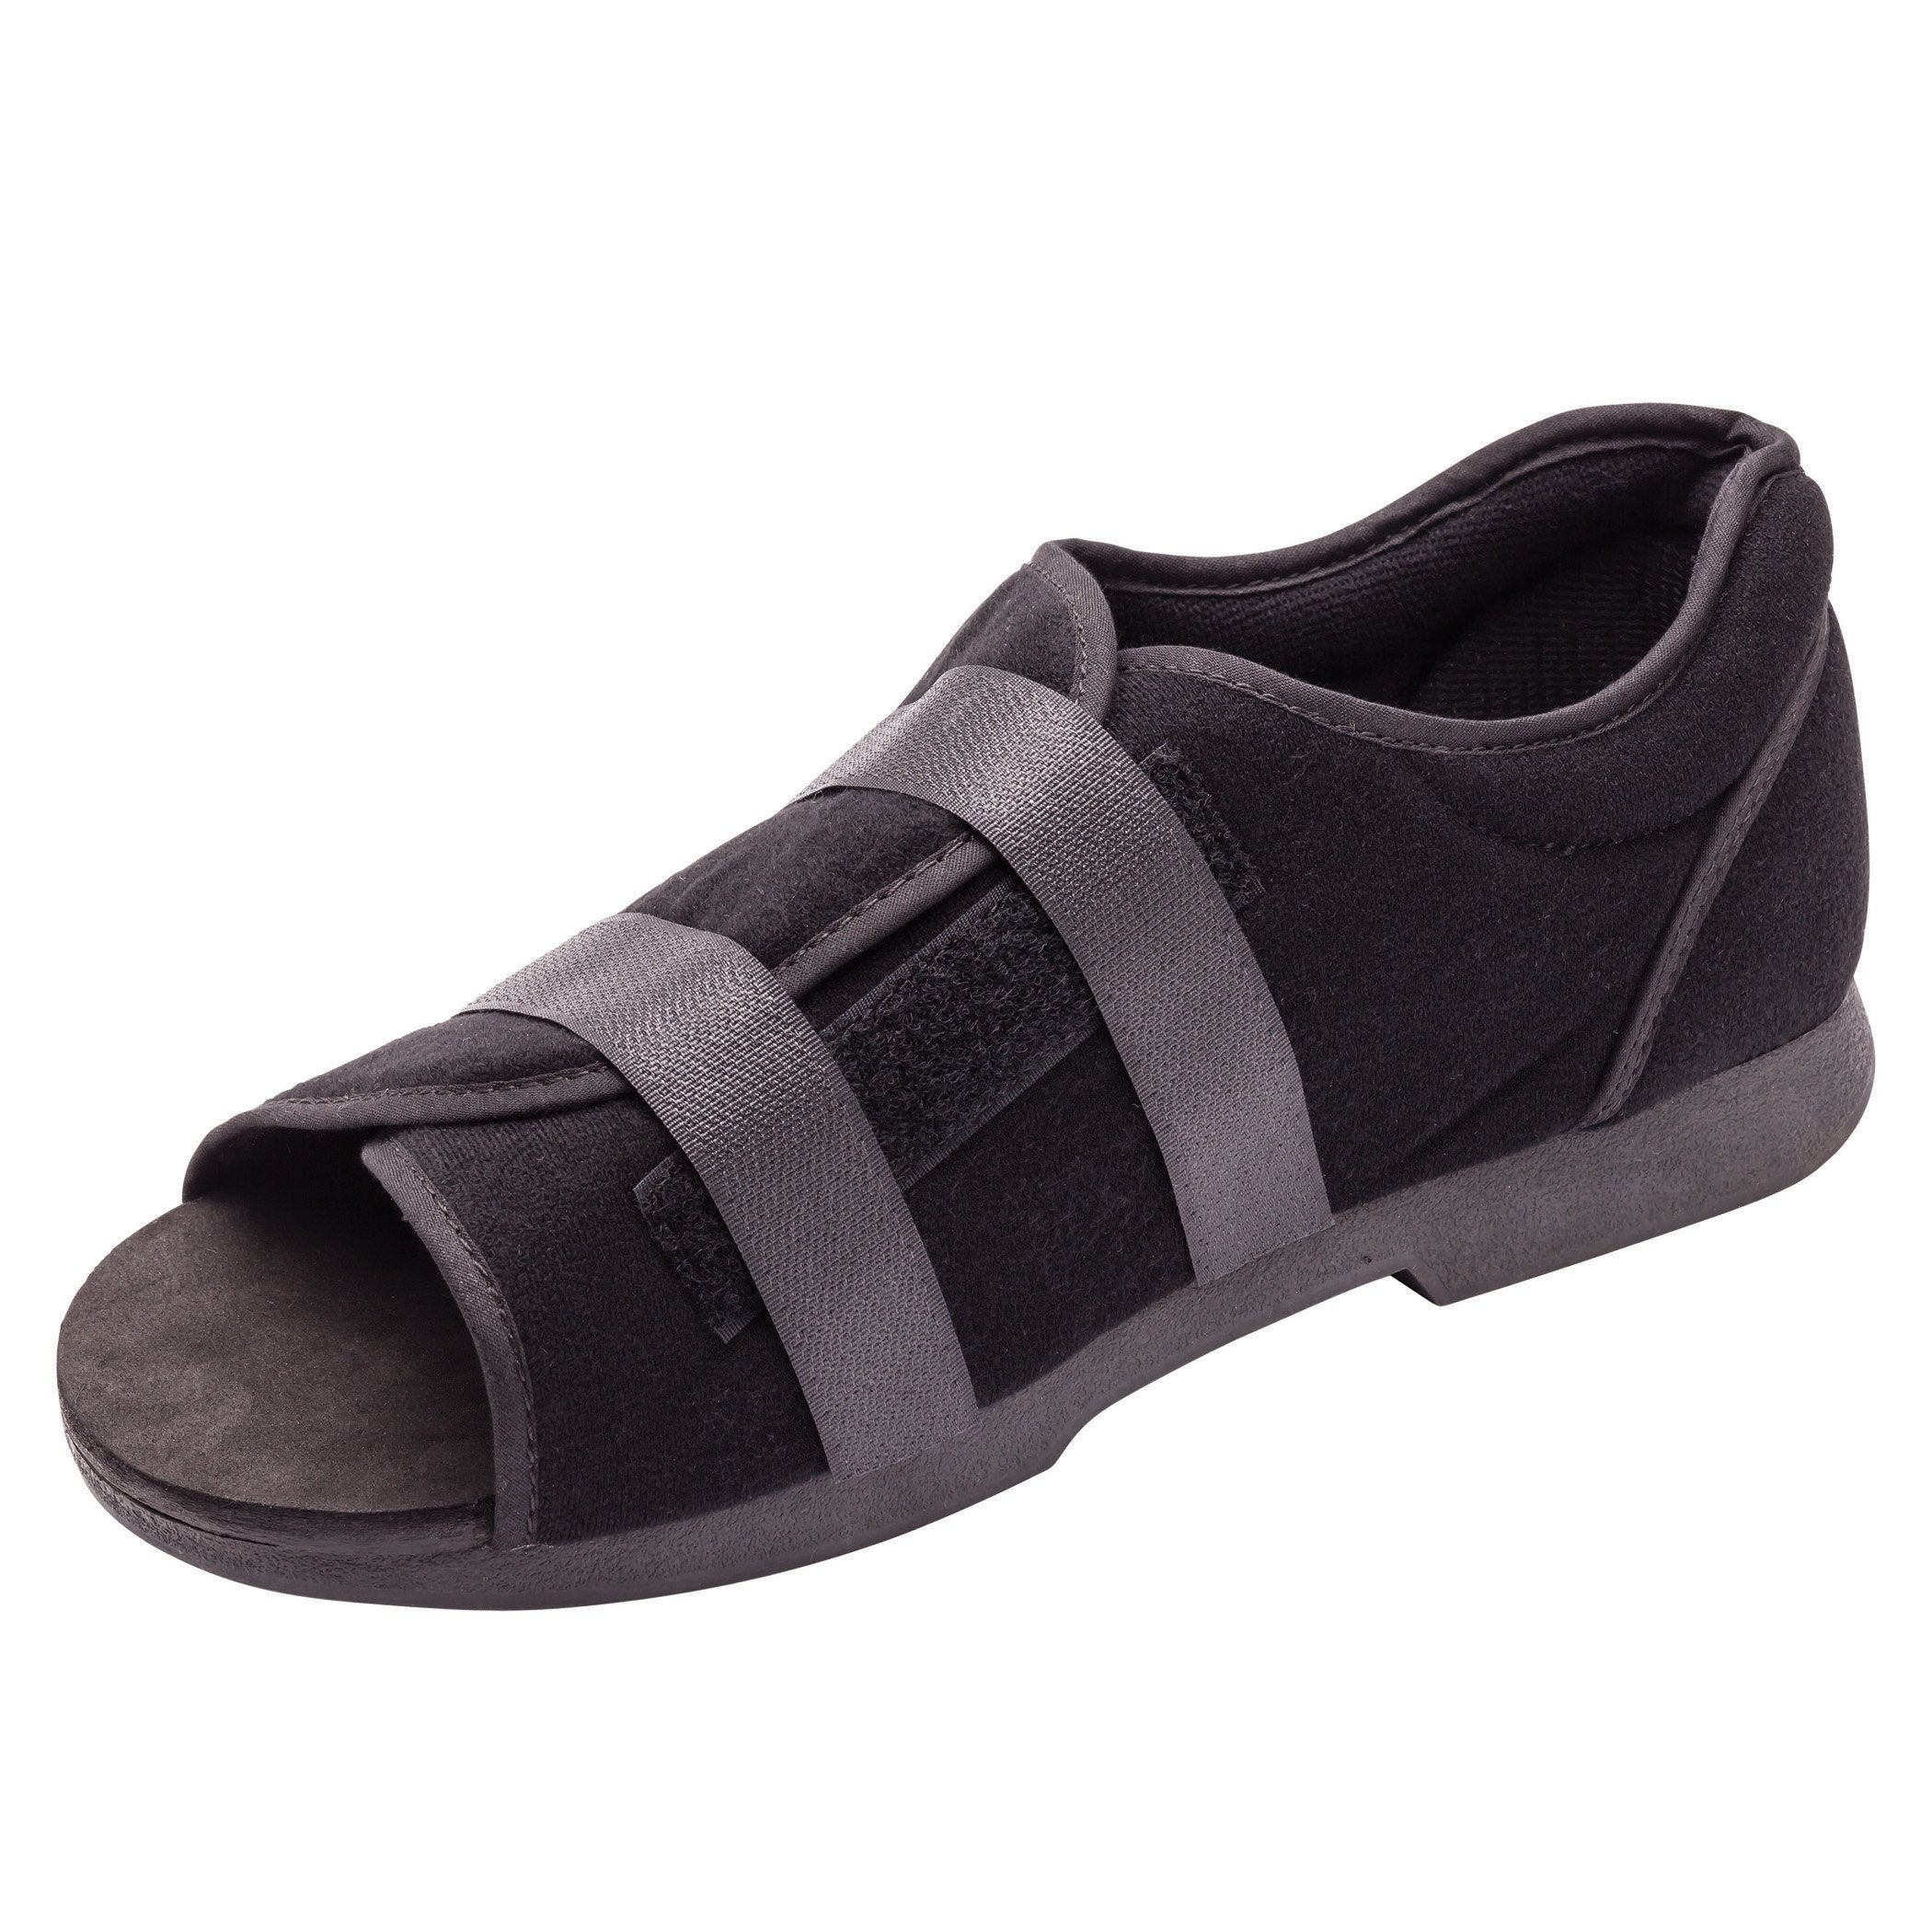 Soft Top Post-Op Shoe Össur® Large Adult Black